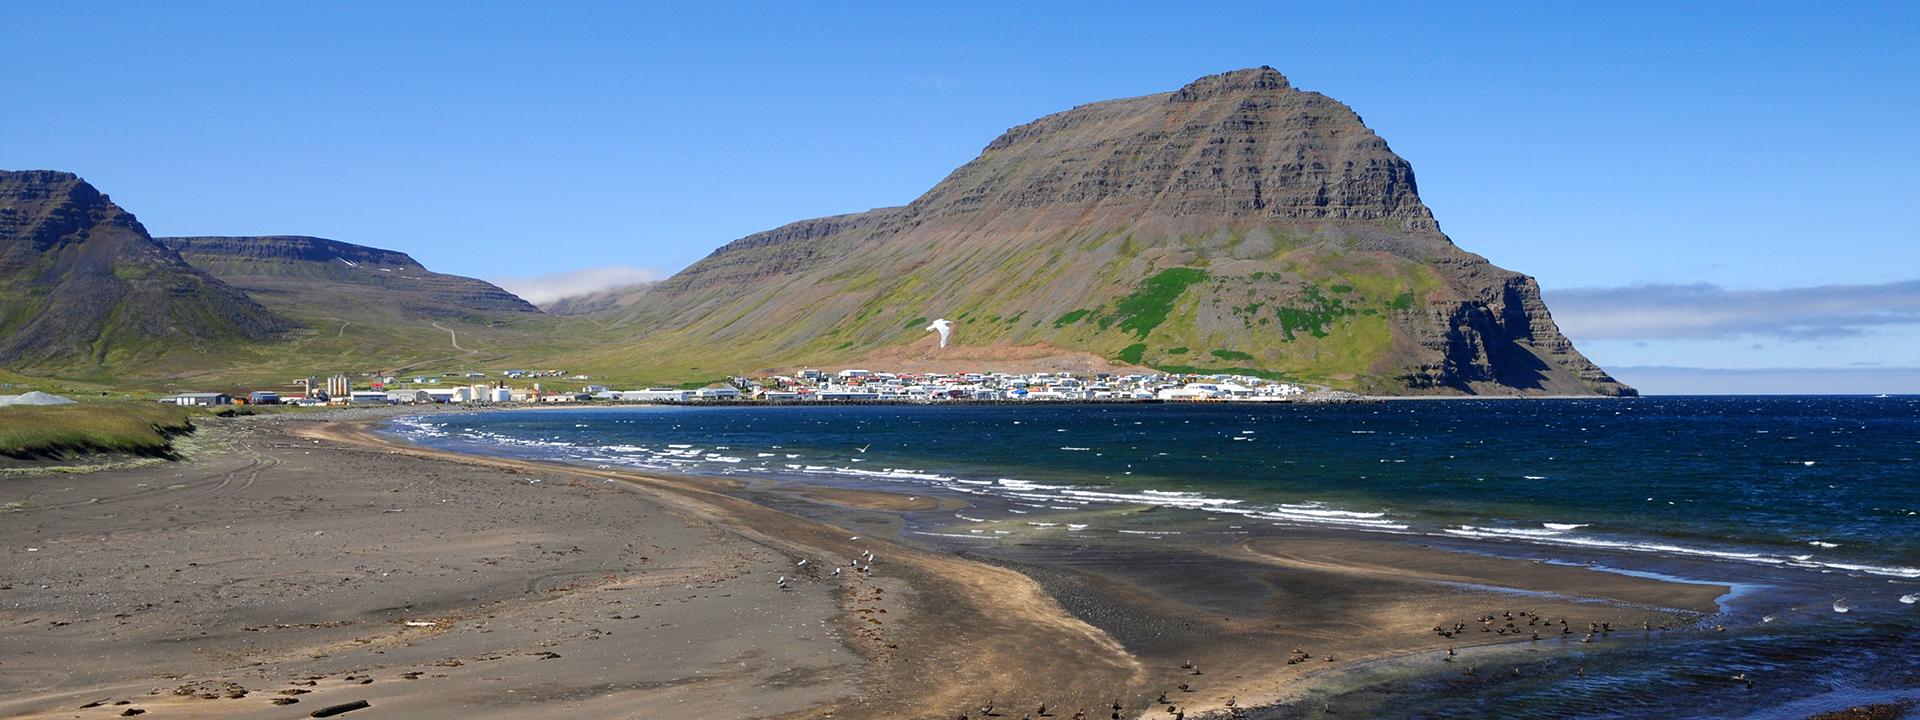 Urlaub auf Island: Angeln und Natur genießen!